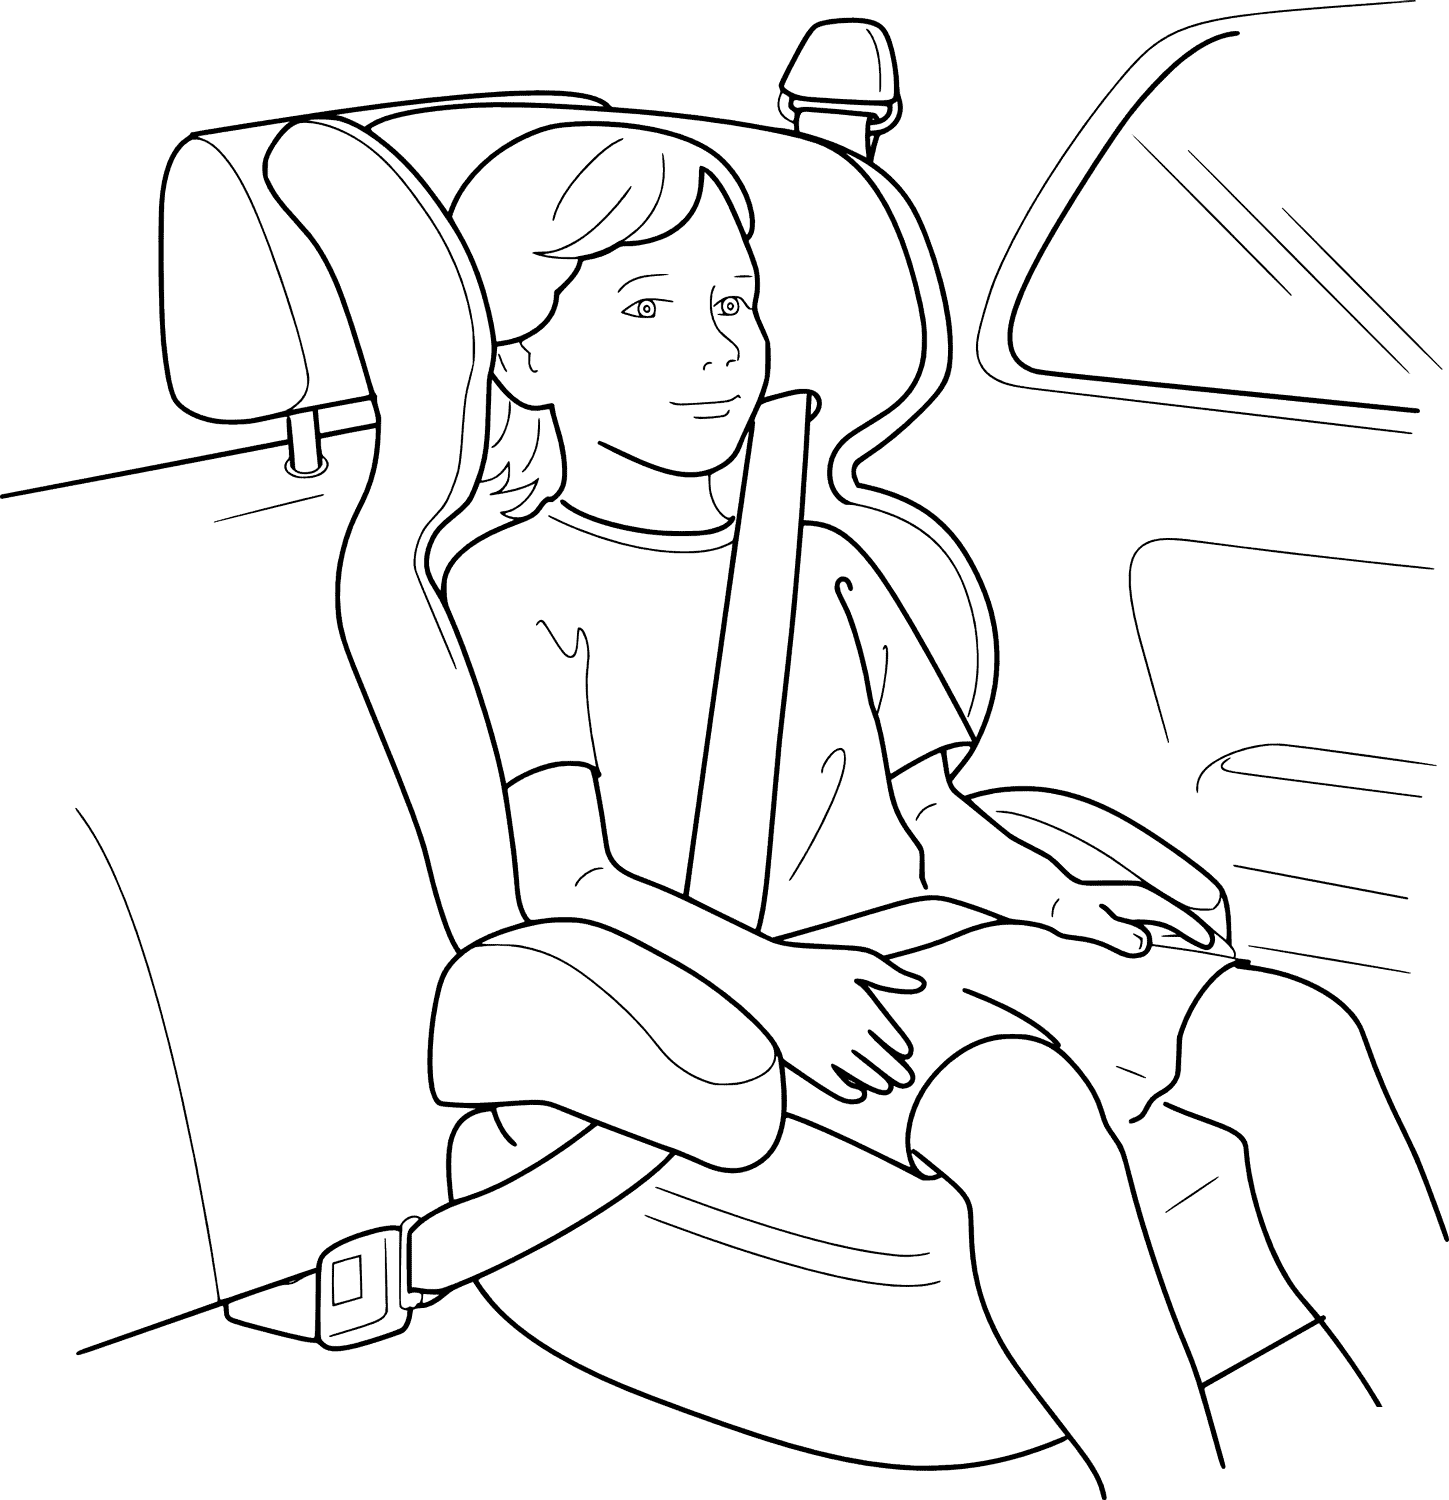 coloriage boucler la ceinture pour la securite voiture enfant